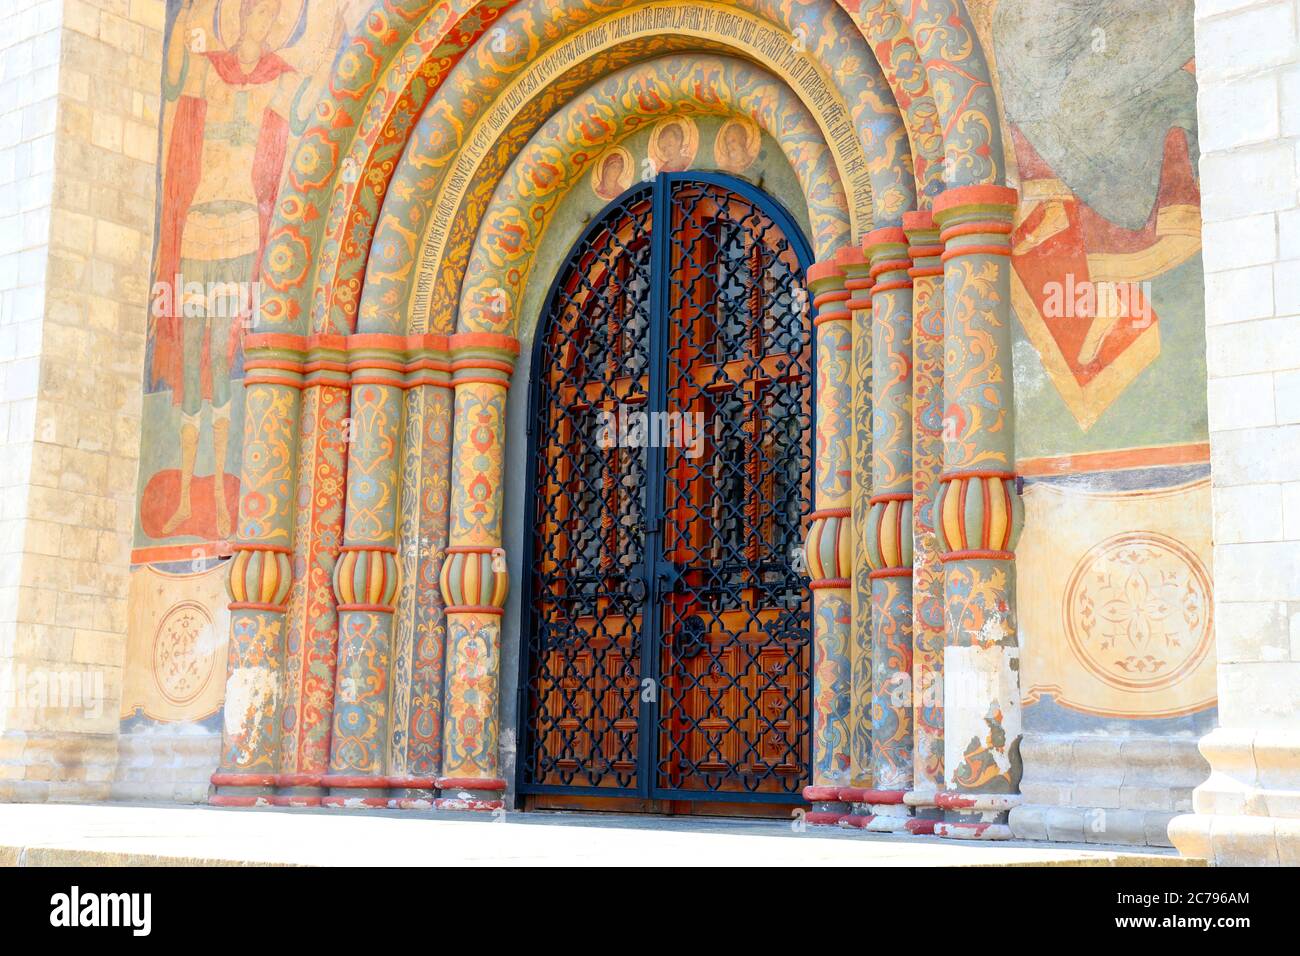 La porte d'entrée de la cathédrale de l'Assomption sur la place de la cathédrale du Kremlin de Moscou Russie Banque D'Images